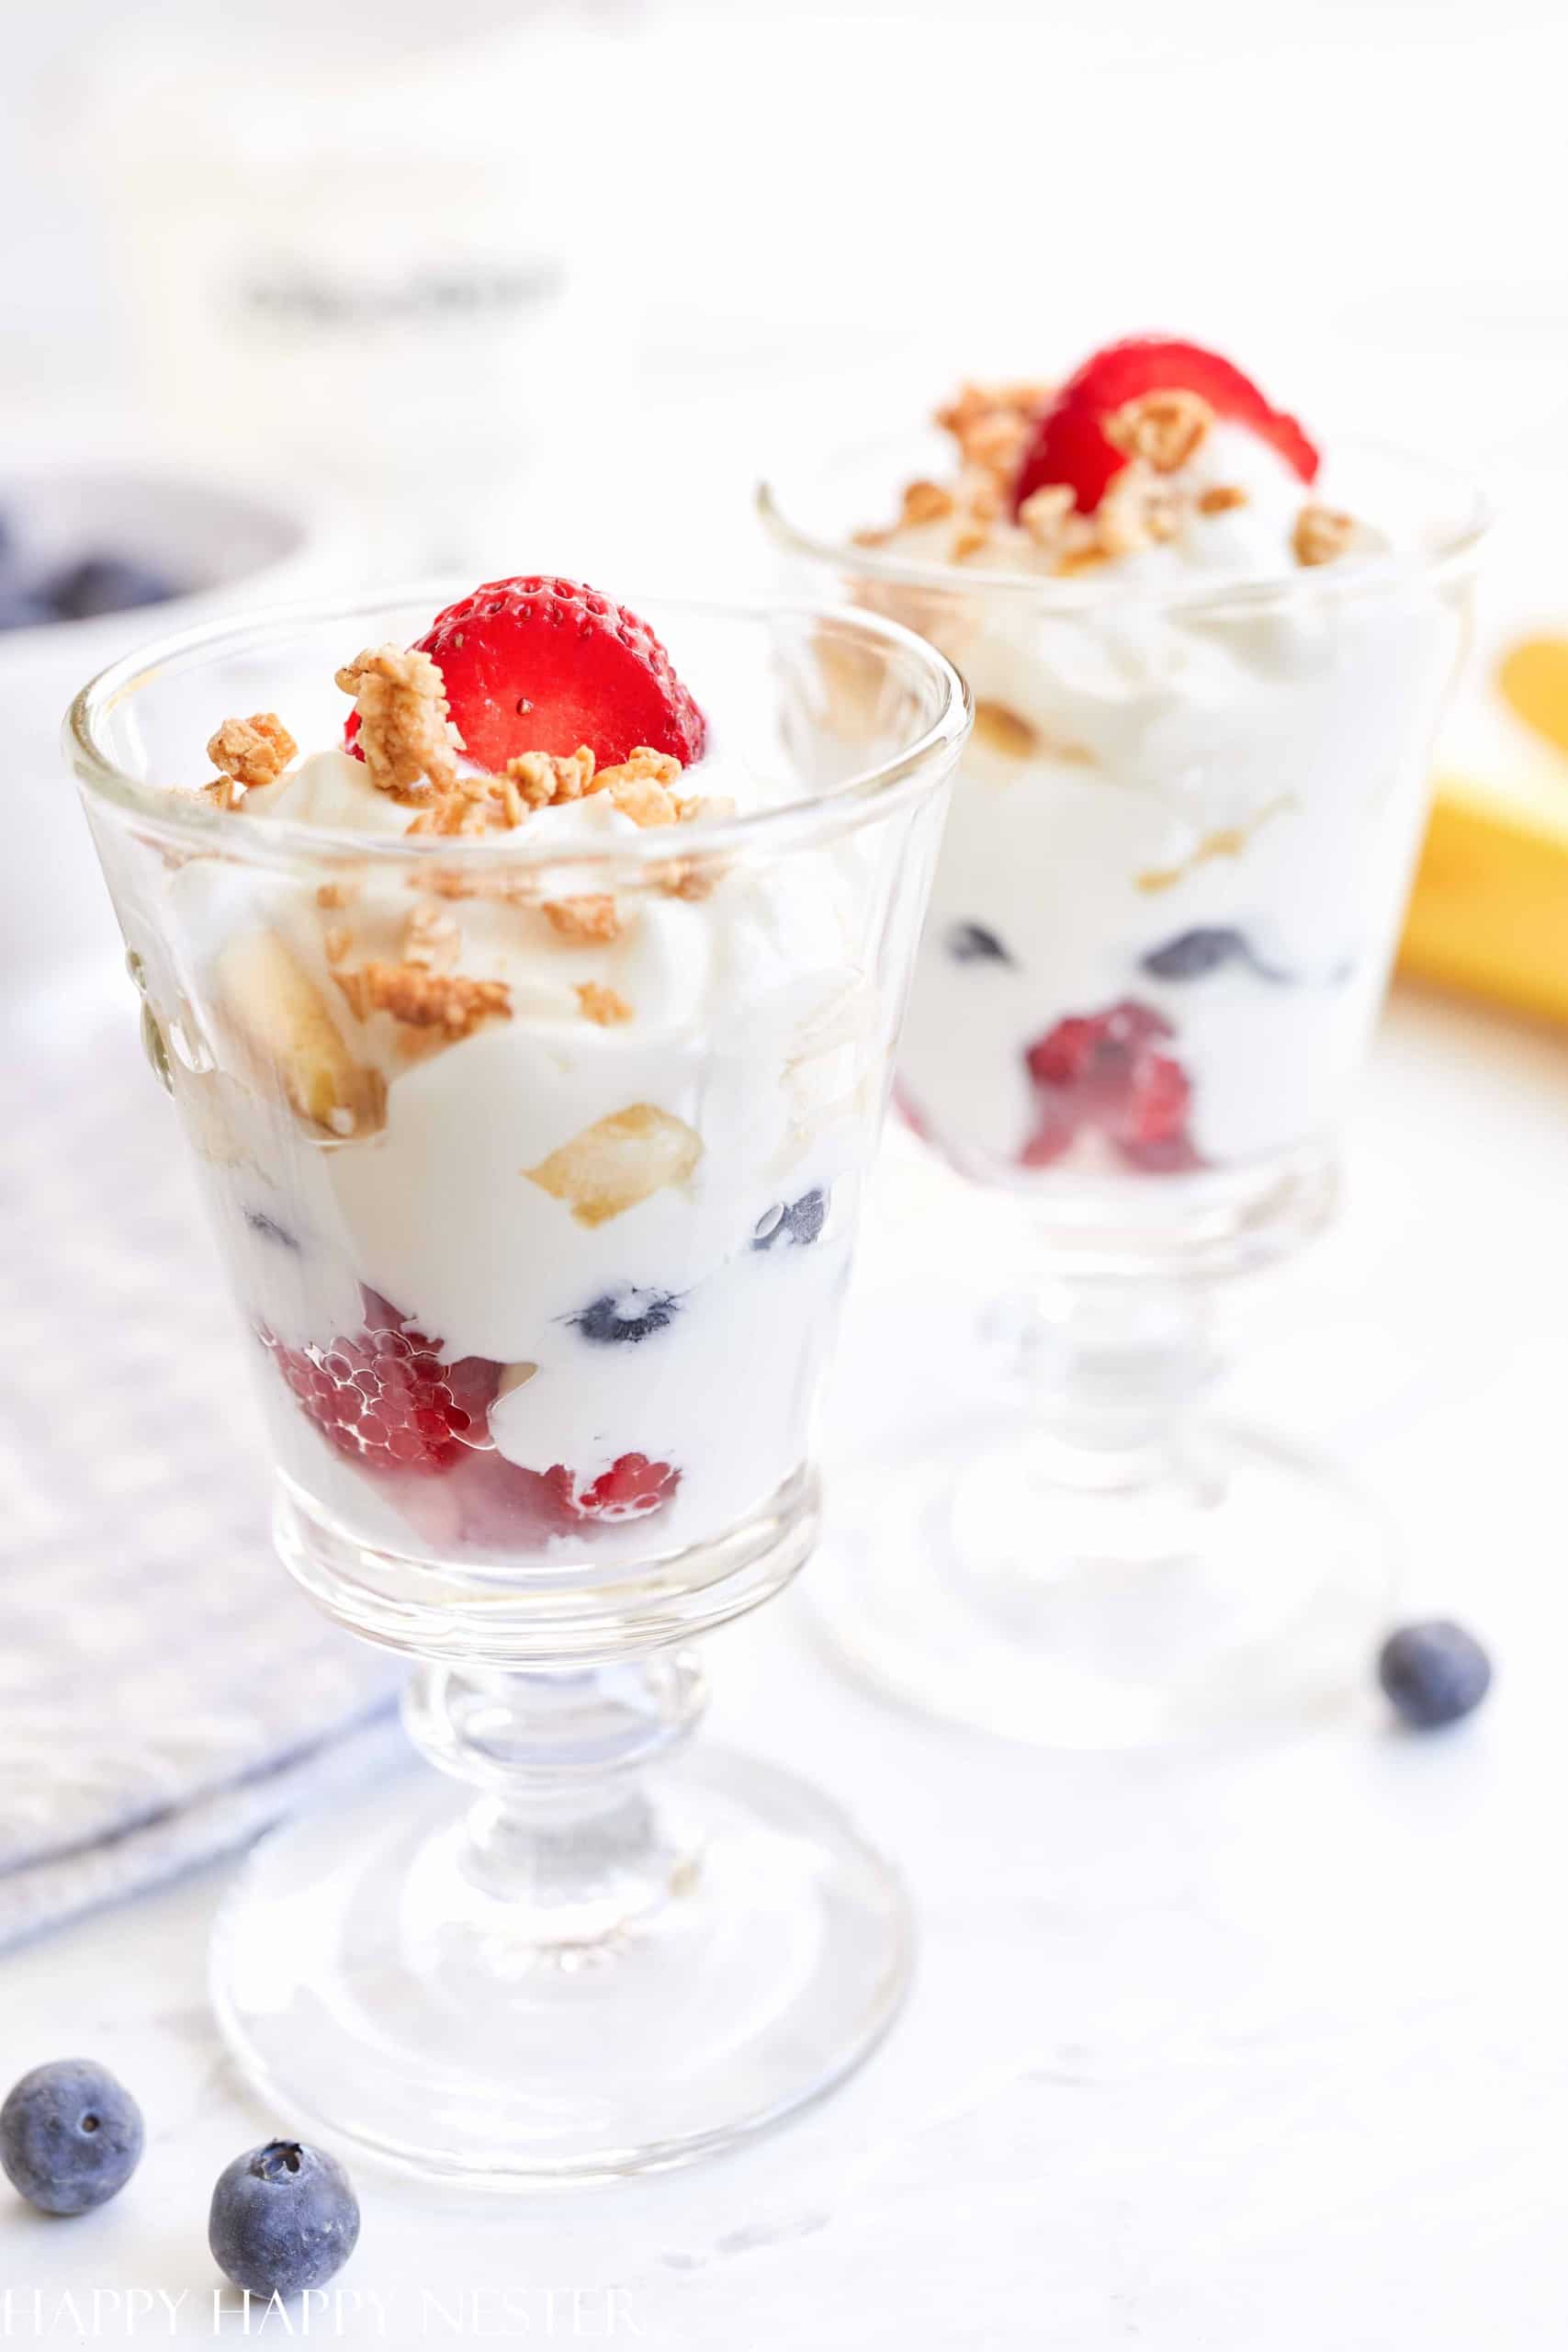 https://happyhappynester.com/wp-content/uploads/2022/06/mcdonalds-yogurt-and-fruit-parfait-recipe-scaled.jpg